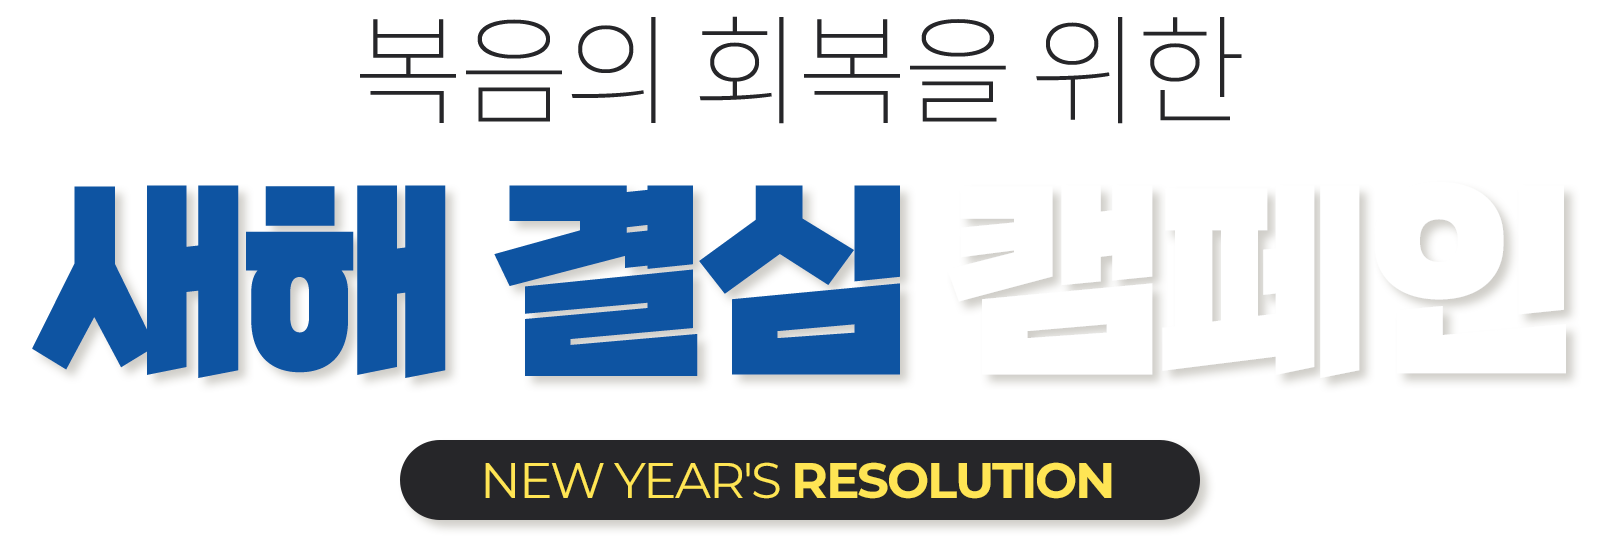 복음의 회복을 위한 새해 결심 캠페인 NEW YEARS RESOLUTION